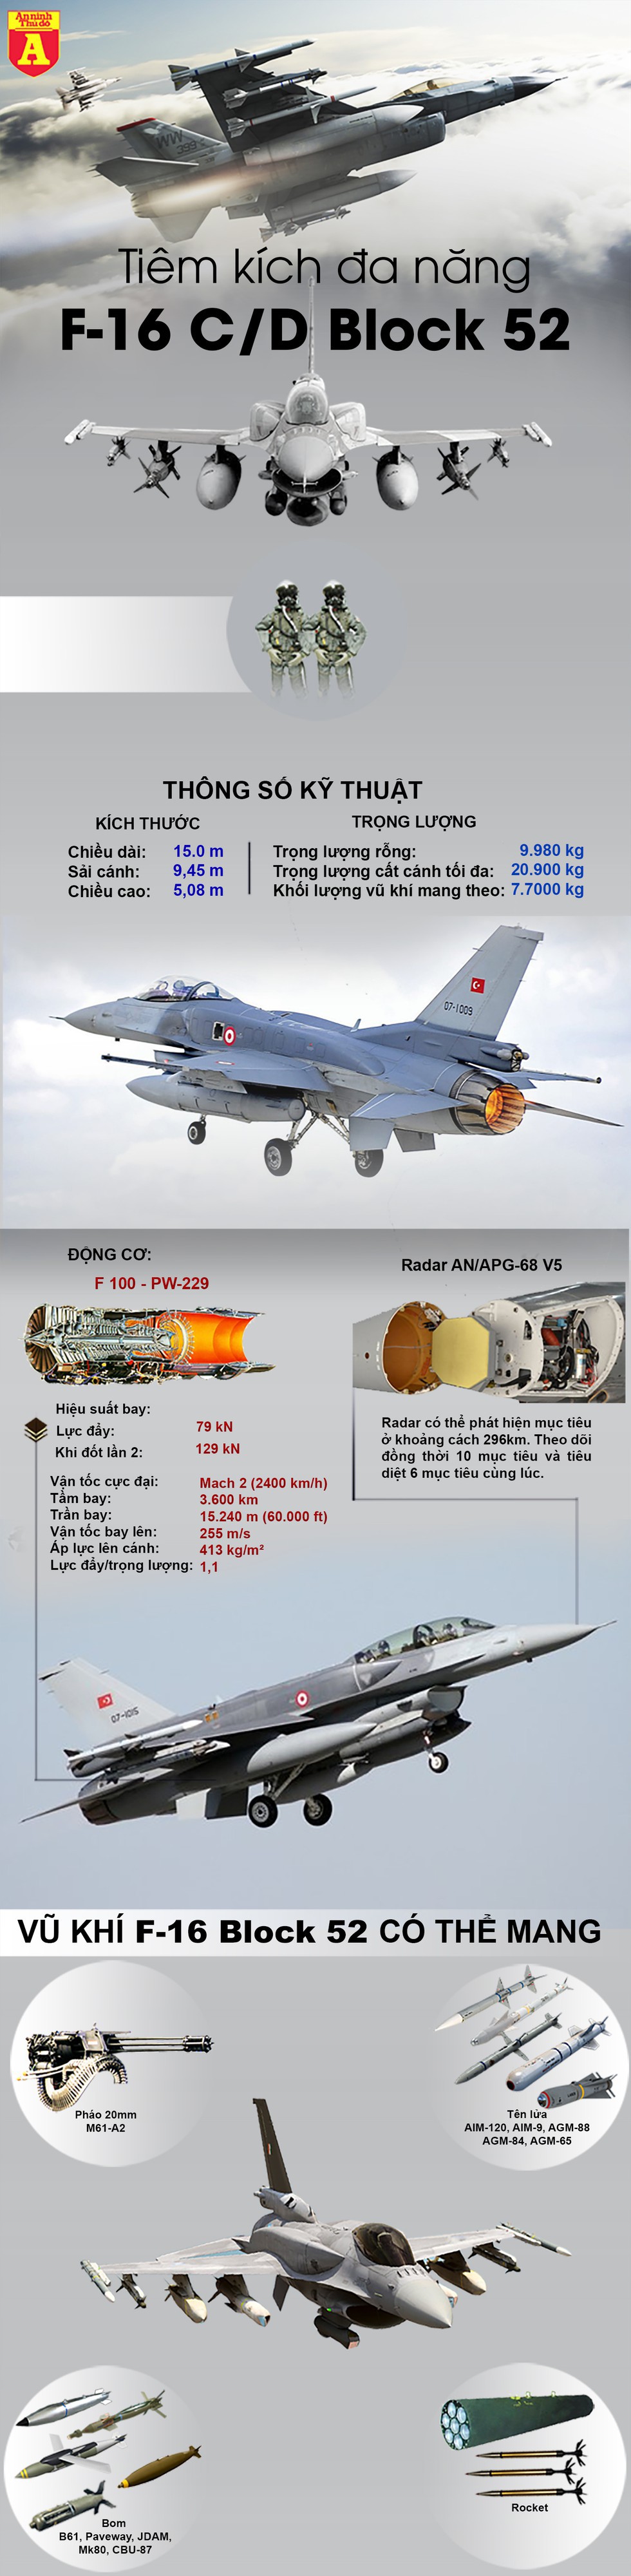 [Infographics] Chỉ đợi Mỹ gật đầu, F-16 Thổ Nhĩ Kỳ sẽ tung hoành đánh phá tại Syria - Ảnh 1